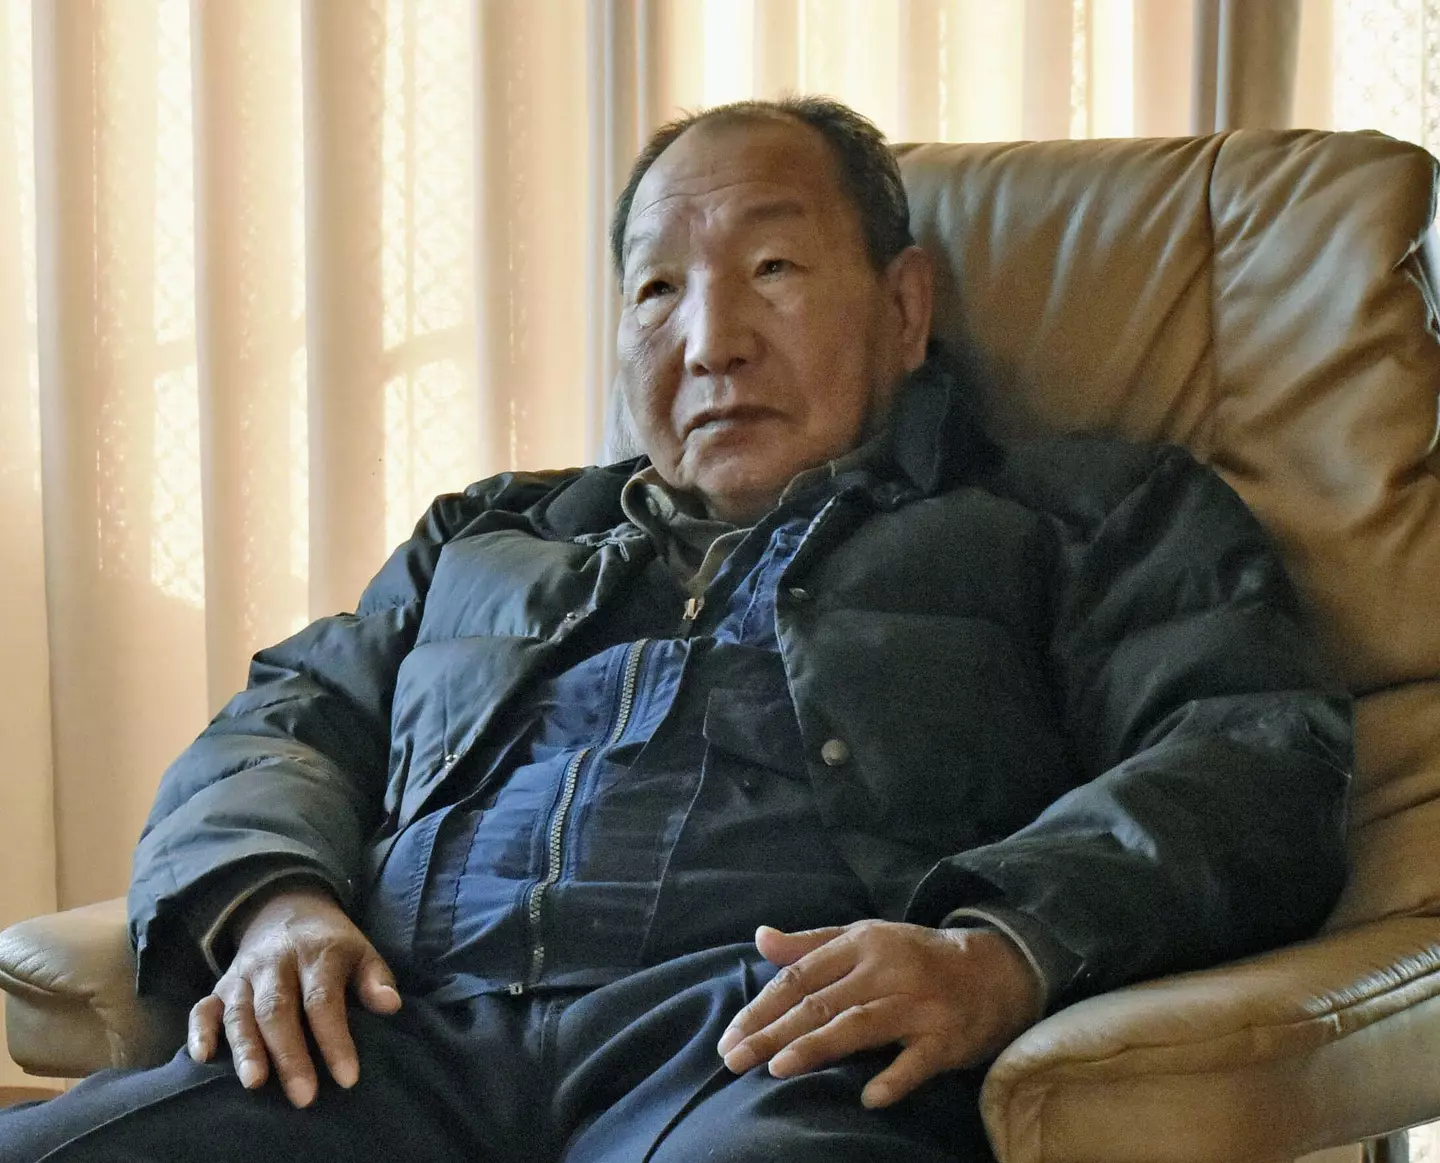 Iwao Hakamada, now 87, was sentenced to death way back in 1968.